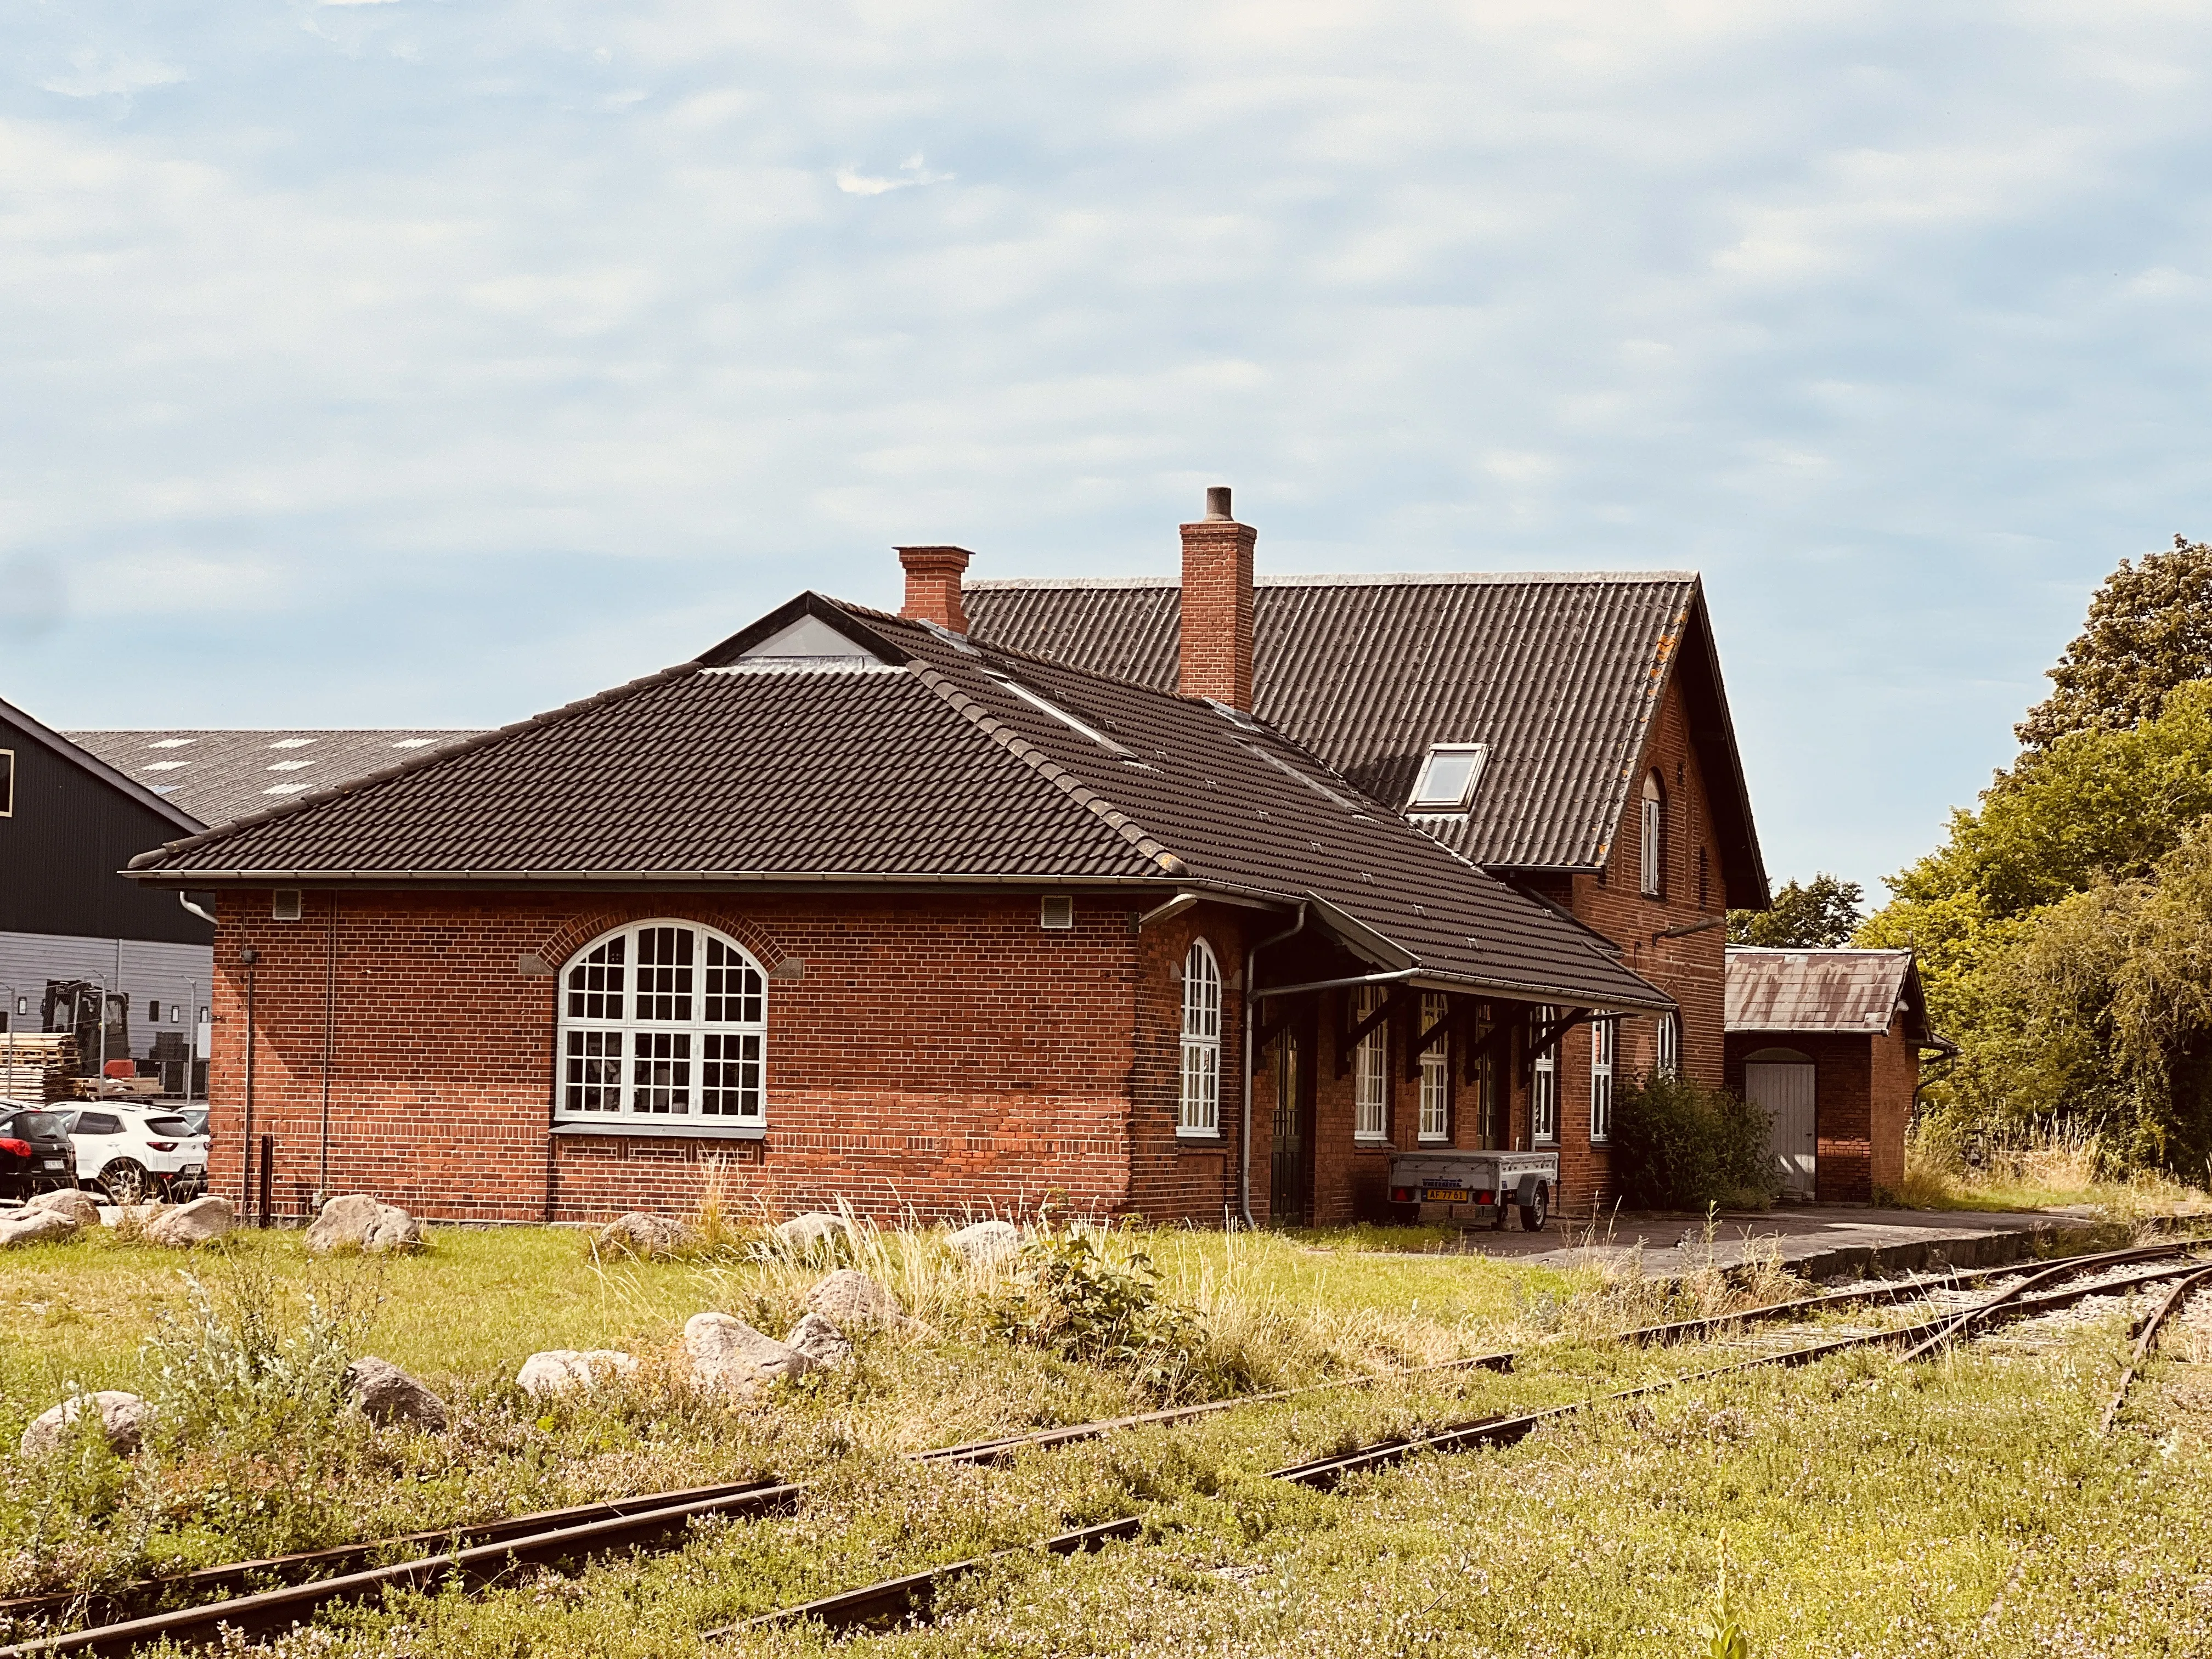 Billede af Gørlev Station.